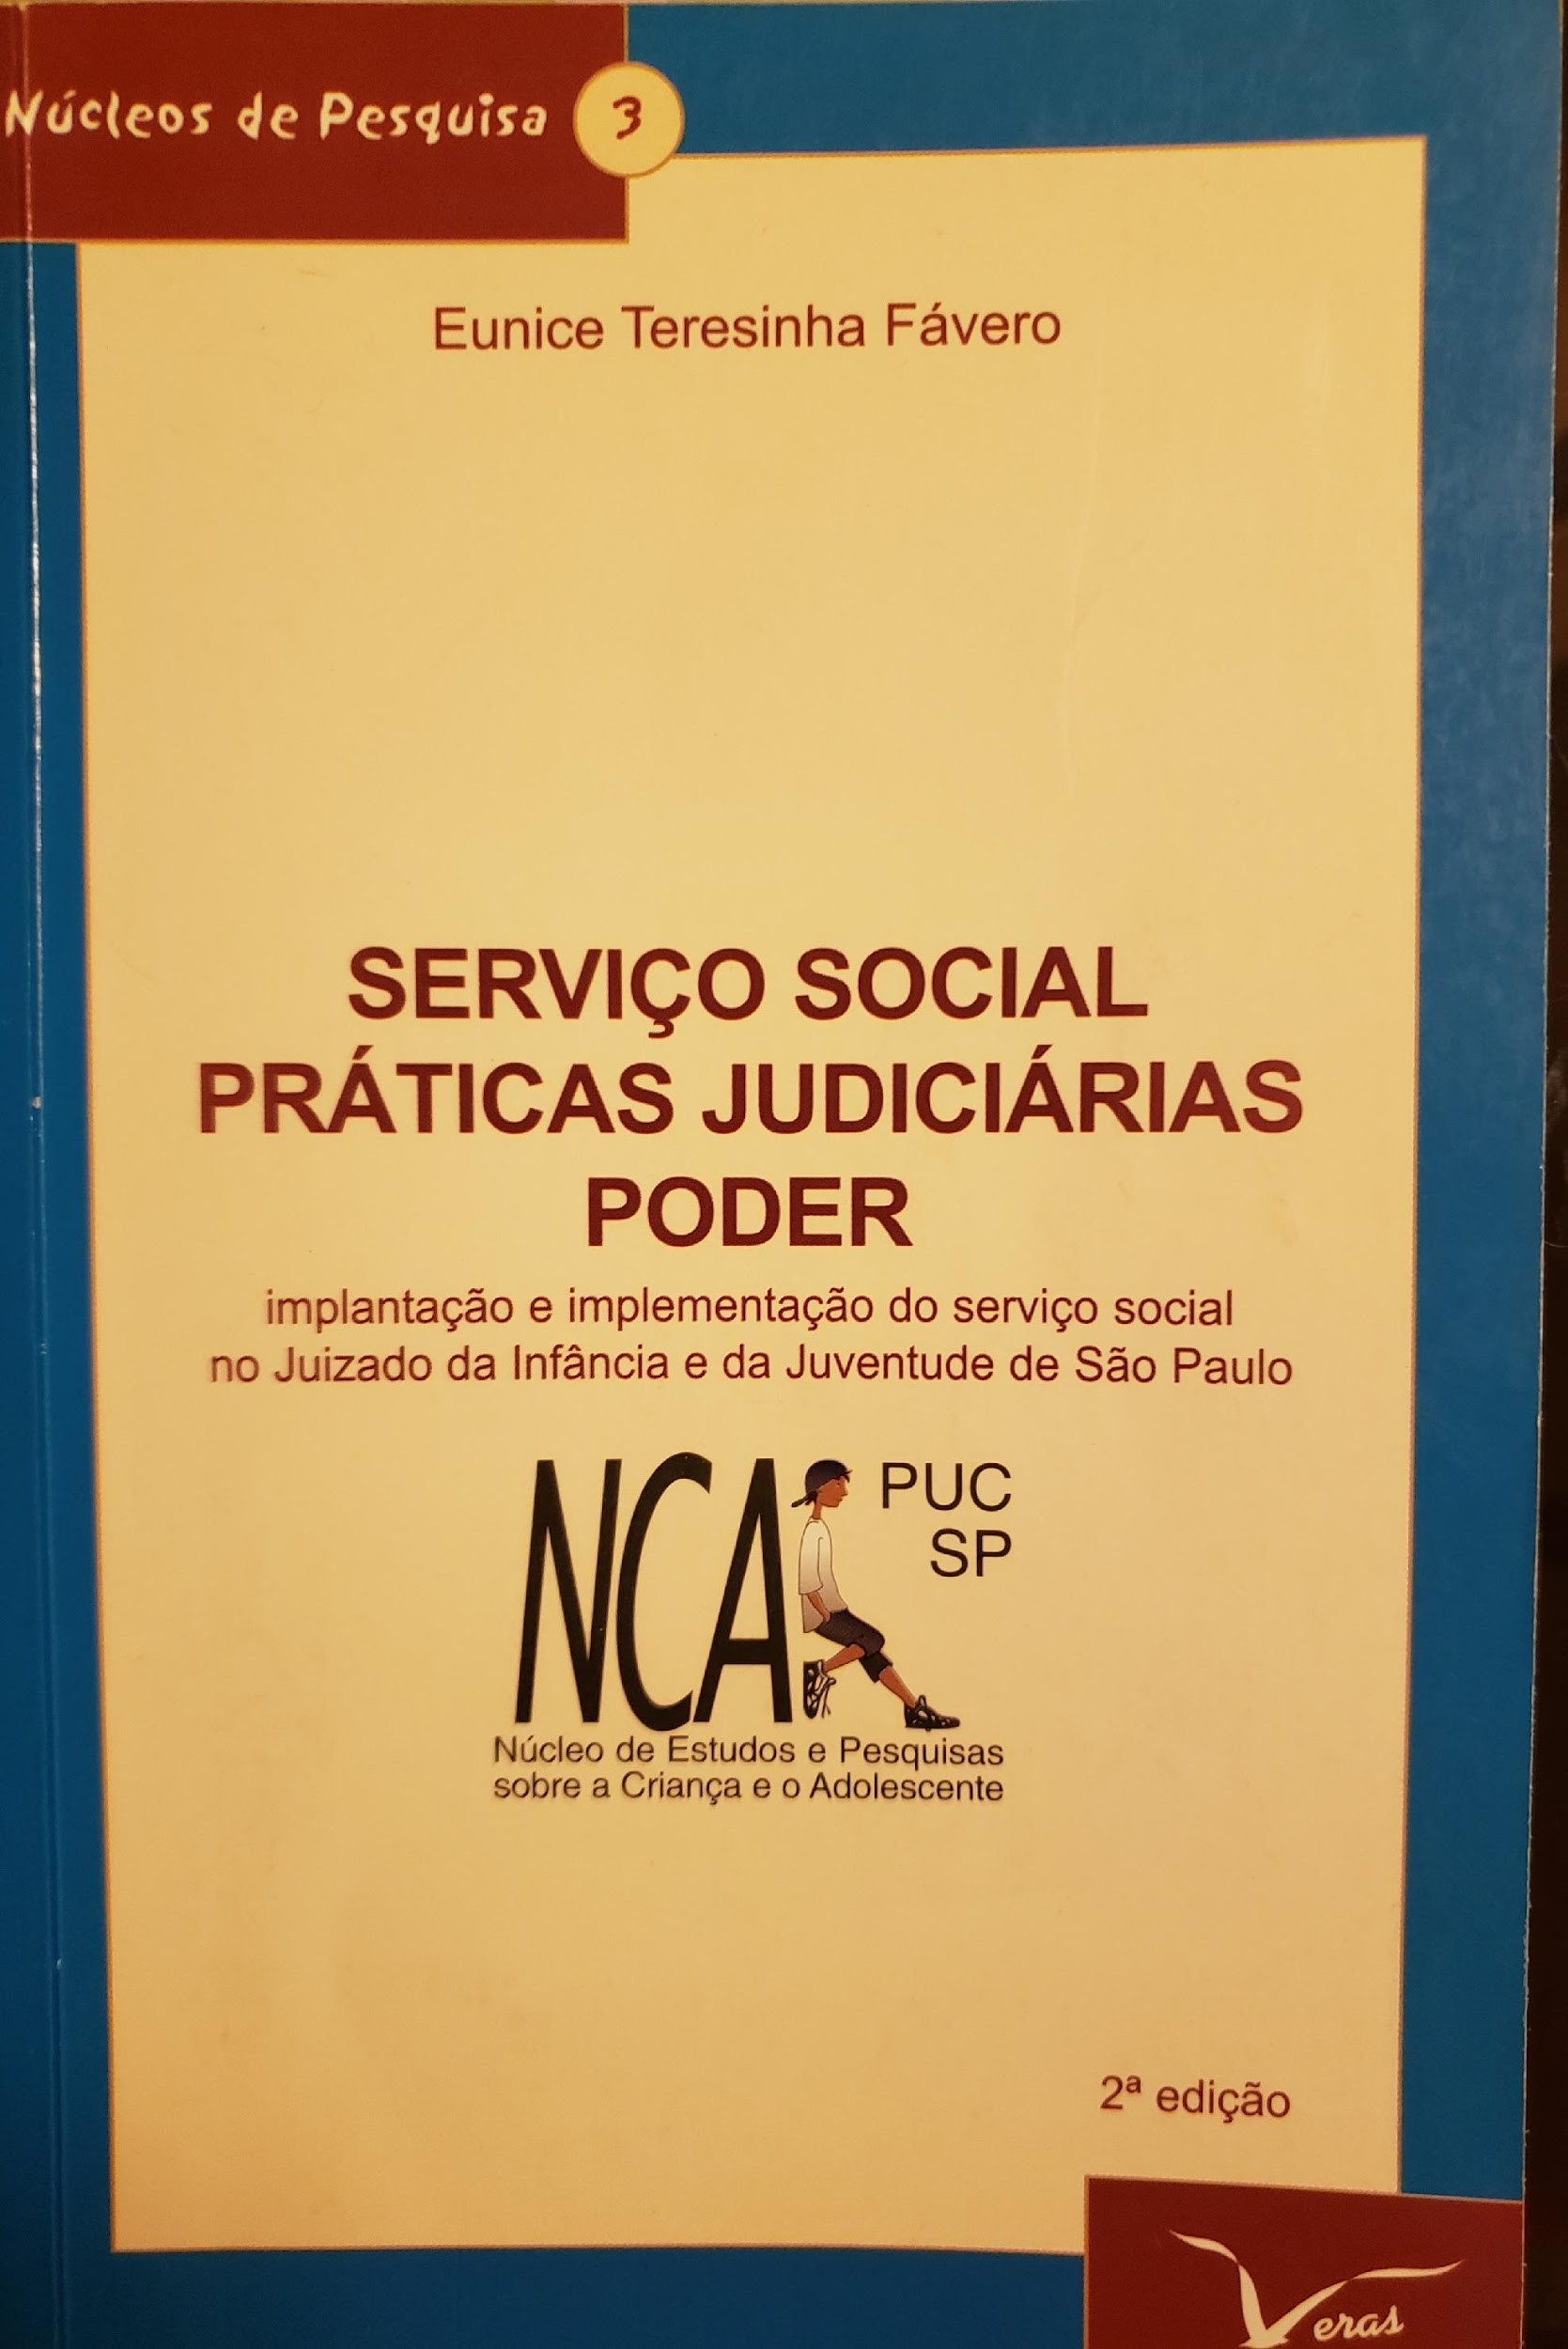 Serviço Social, Práticas Judiciárias, Poder – implantação e implementação do Serviço Social no Juizado da Infância e da Juventude de São Paulo